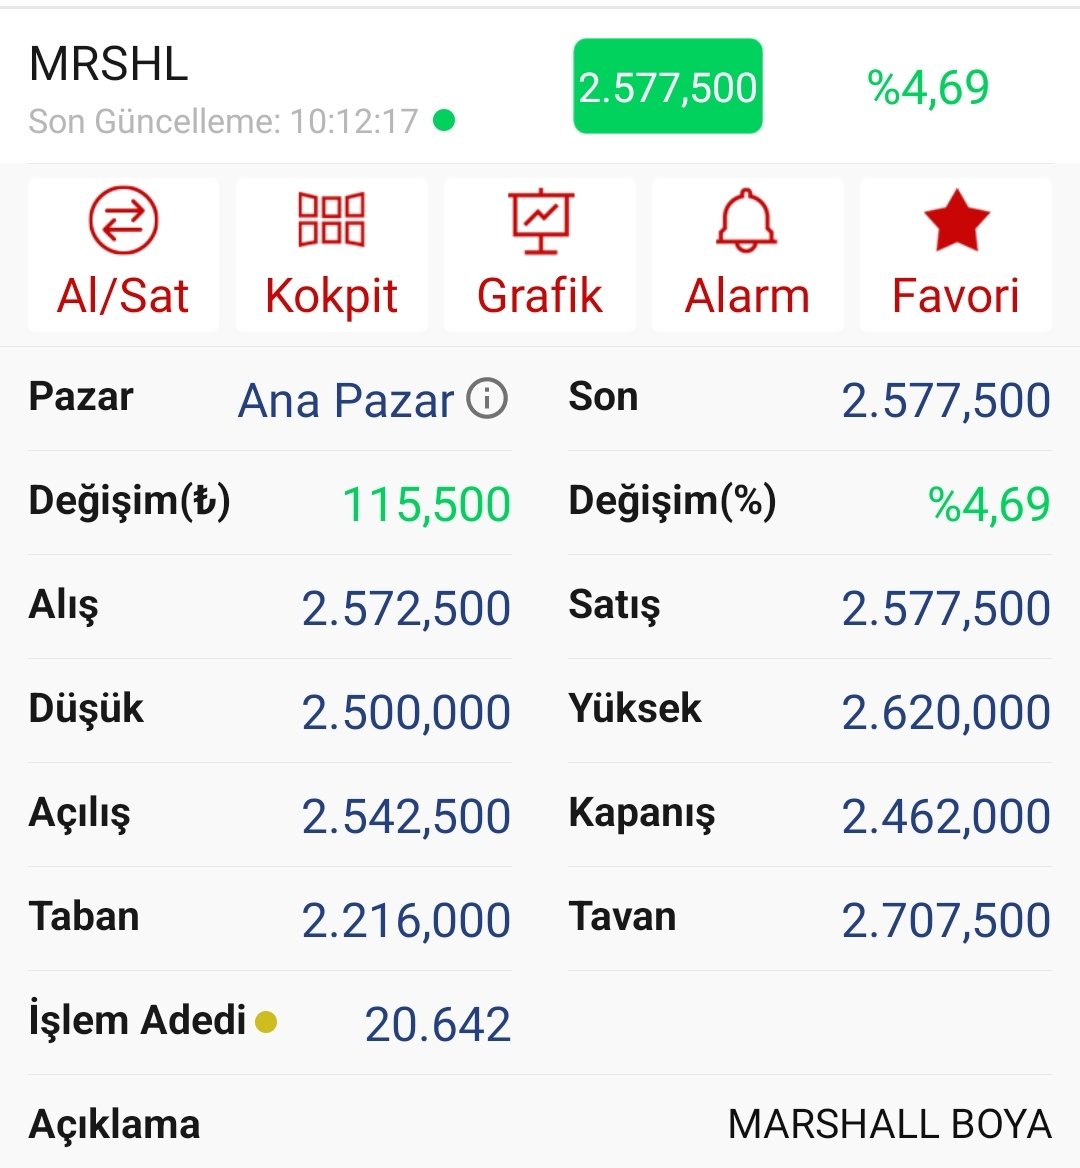 #mrshl efsane başlasın ☀️☀️☀️ eski takip maliyet 650 tl